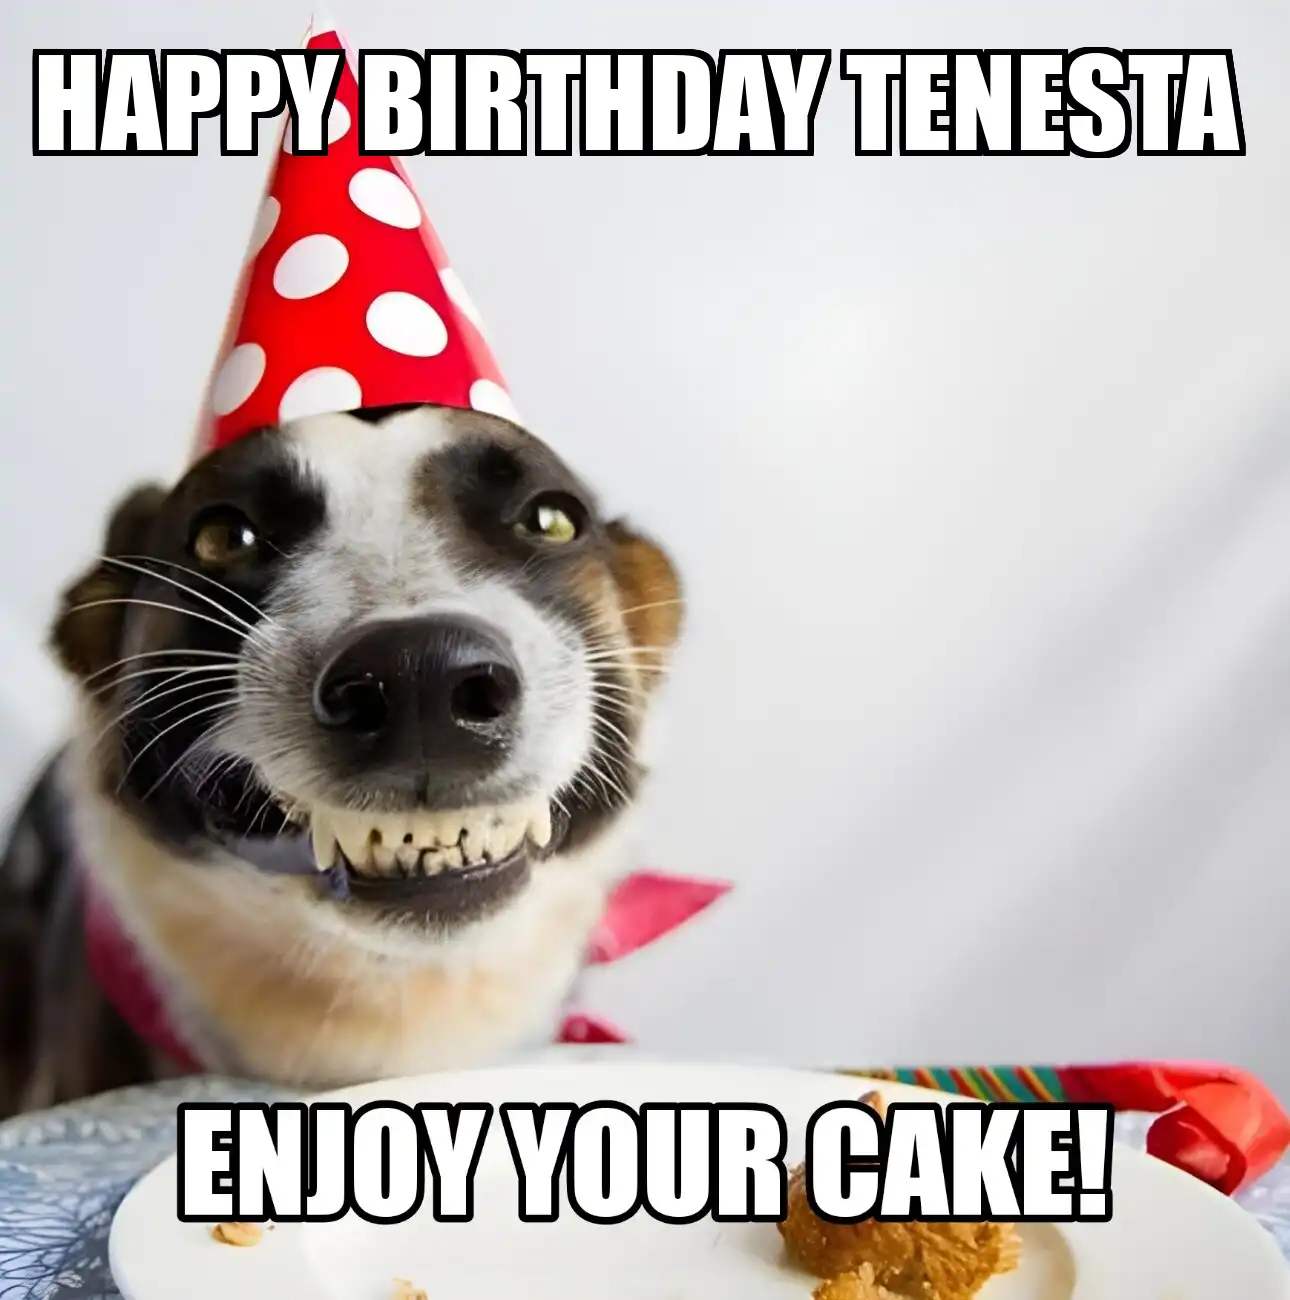 Happy Birthday Tenesta Enjoy Your Cake Dog Meme